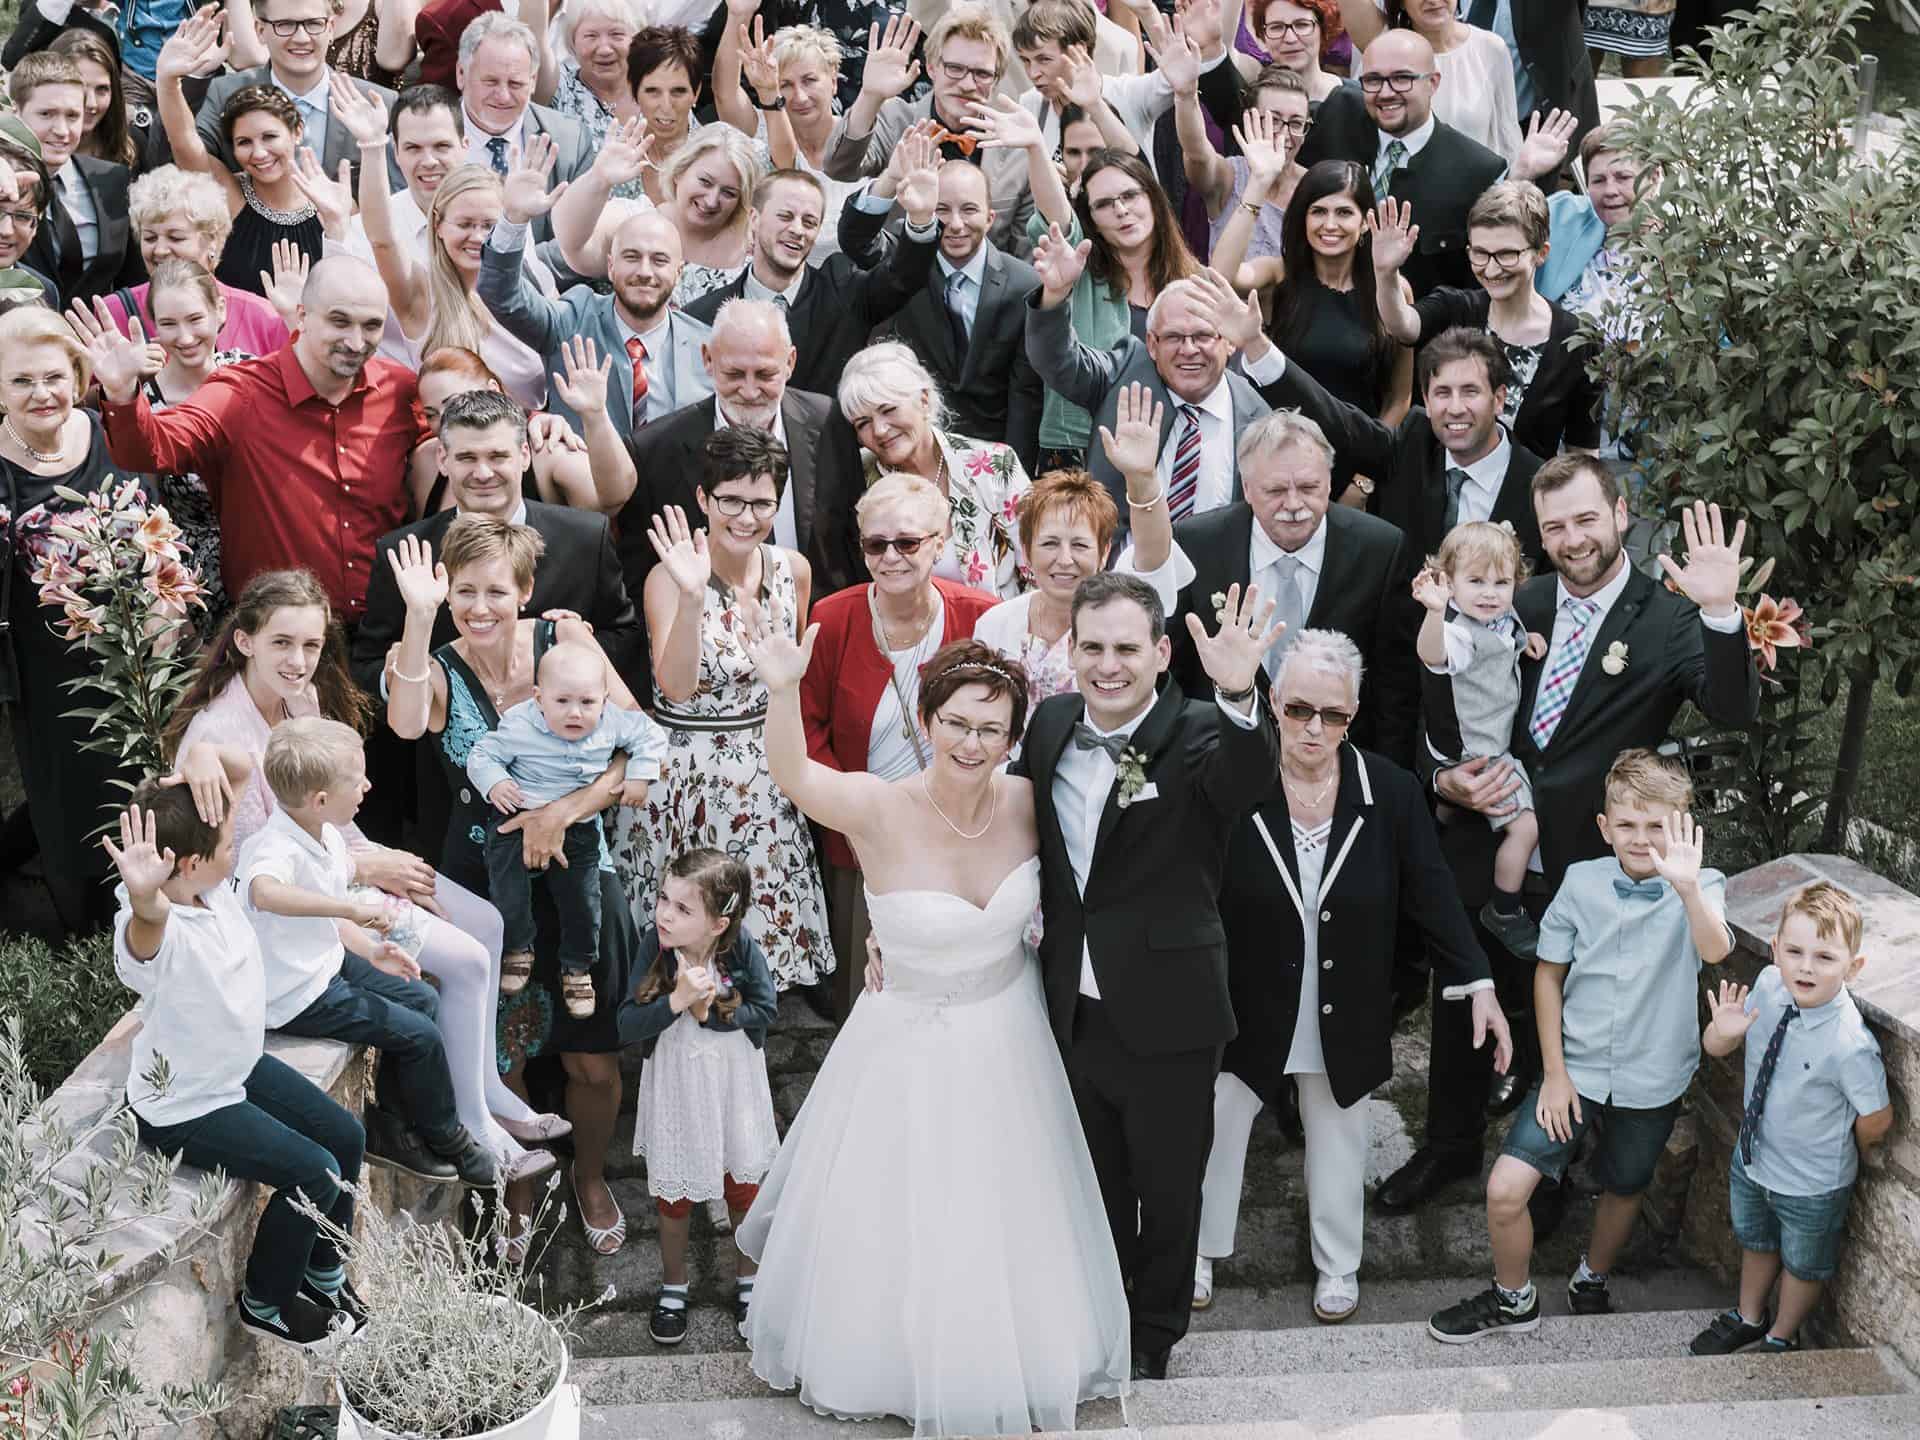 Eine große Gruppe von Menschen posiert für ein Hochzeitsfoto.